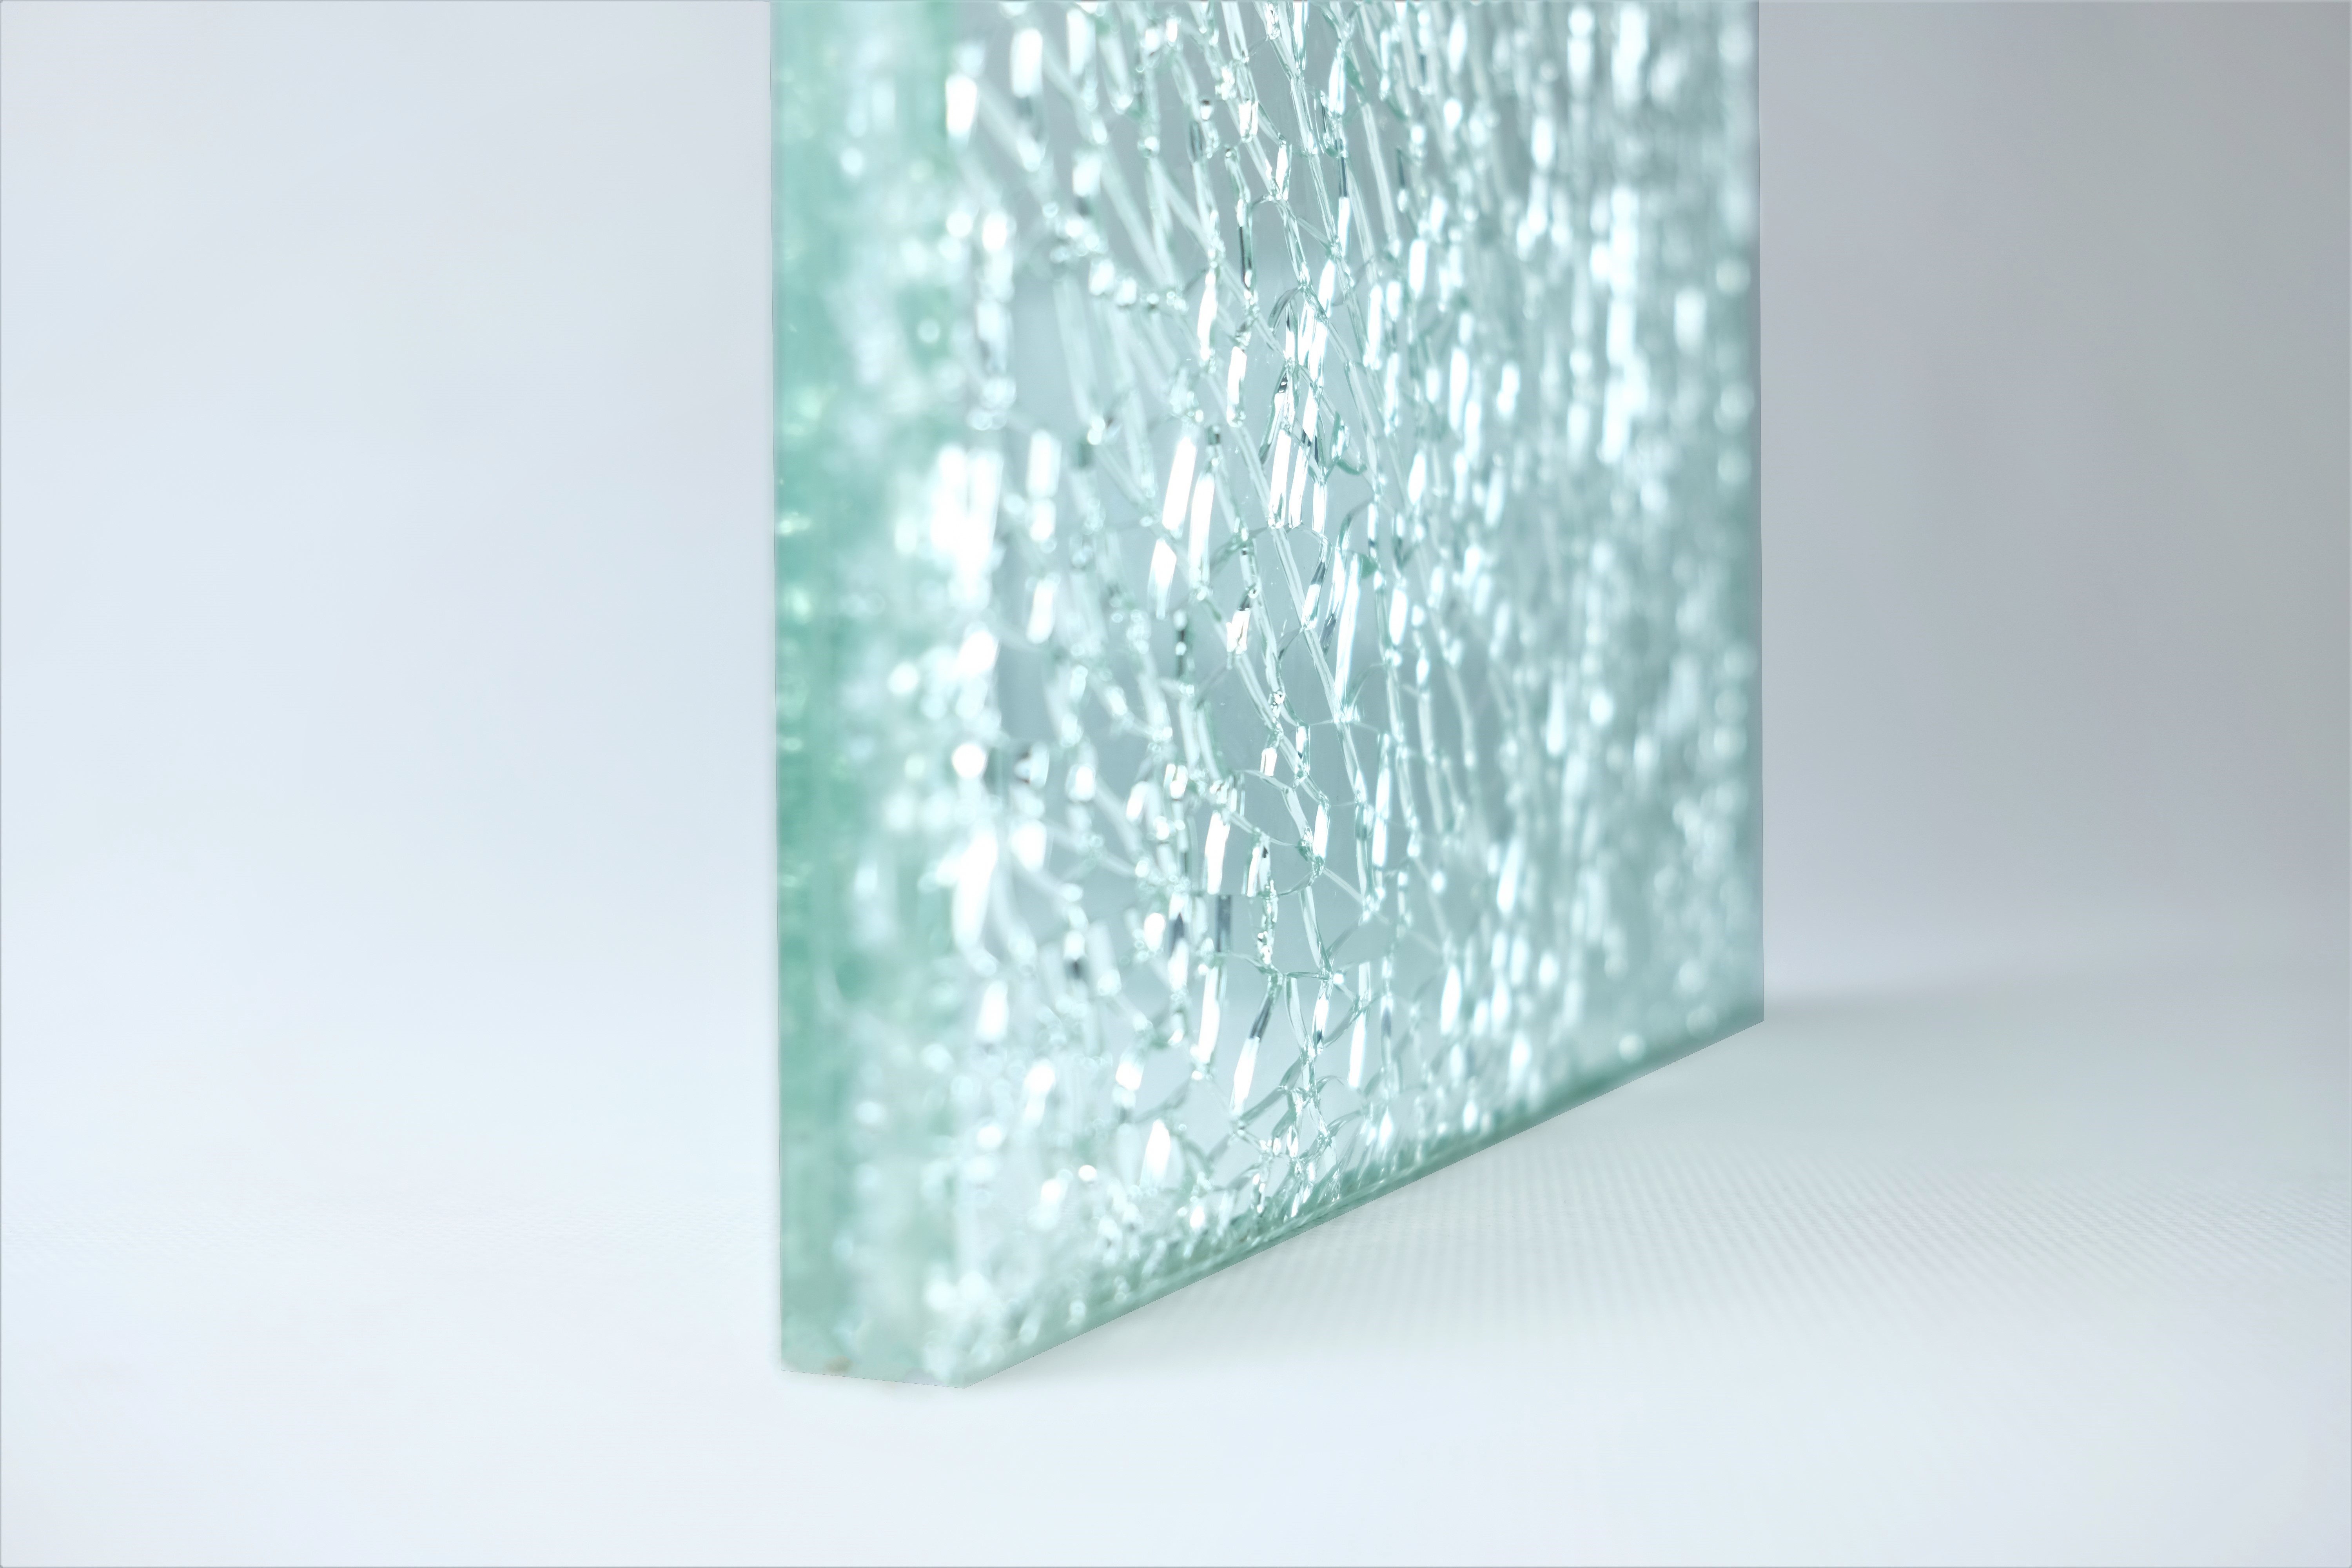 Crackle glass là loại kính được thiết kế độc đáo với các vết nứt nhỏ trên bề mặt giúp tăng sự hoàn hảo của sản phẩm. Hãy chiêm ngưỡng những sản phẩm sử dụng loại kính này để cảm nhận được sự sang trọng và quý phái mà sản phẩm mang lại.